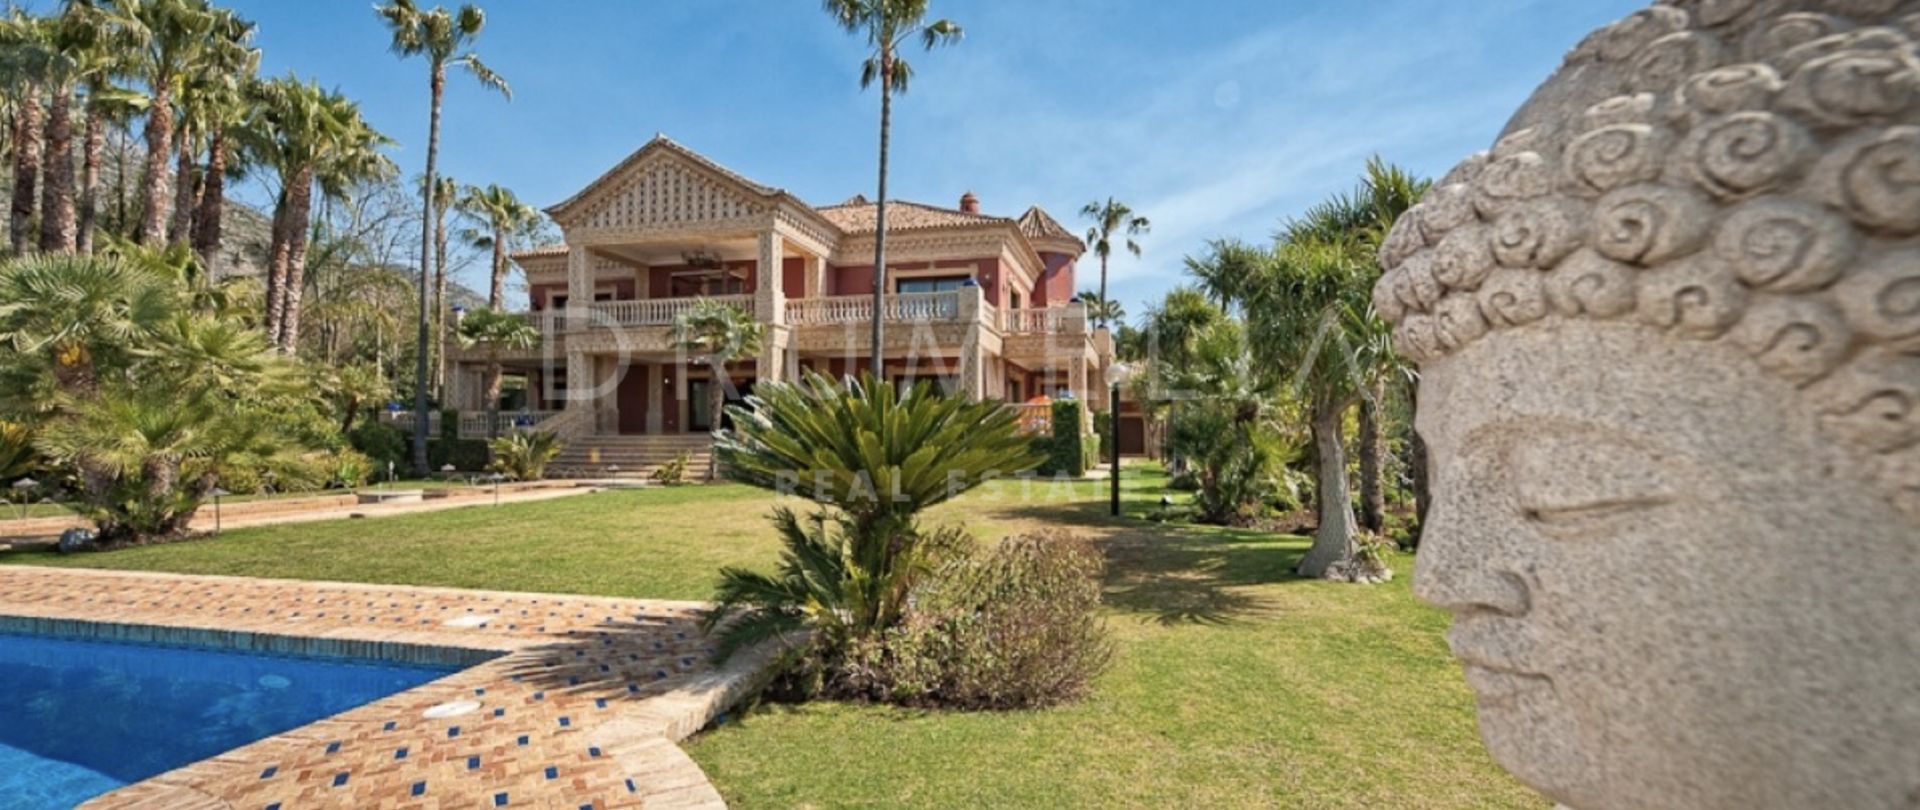 Extraordinaire grande demeure avec vue sur la Sierra Blanca à vendre sur le Golden Mile de Marbella